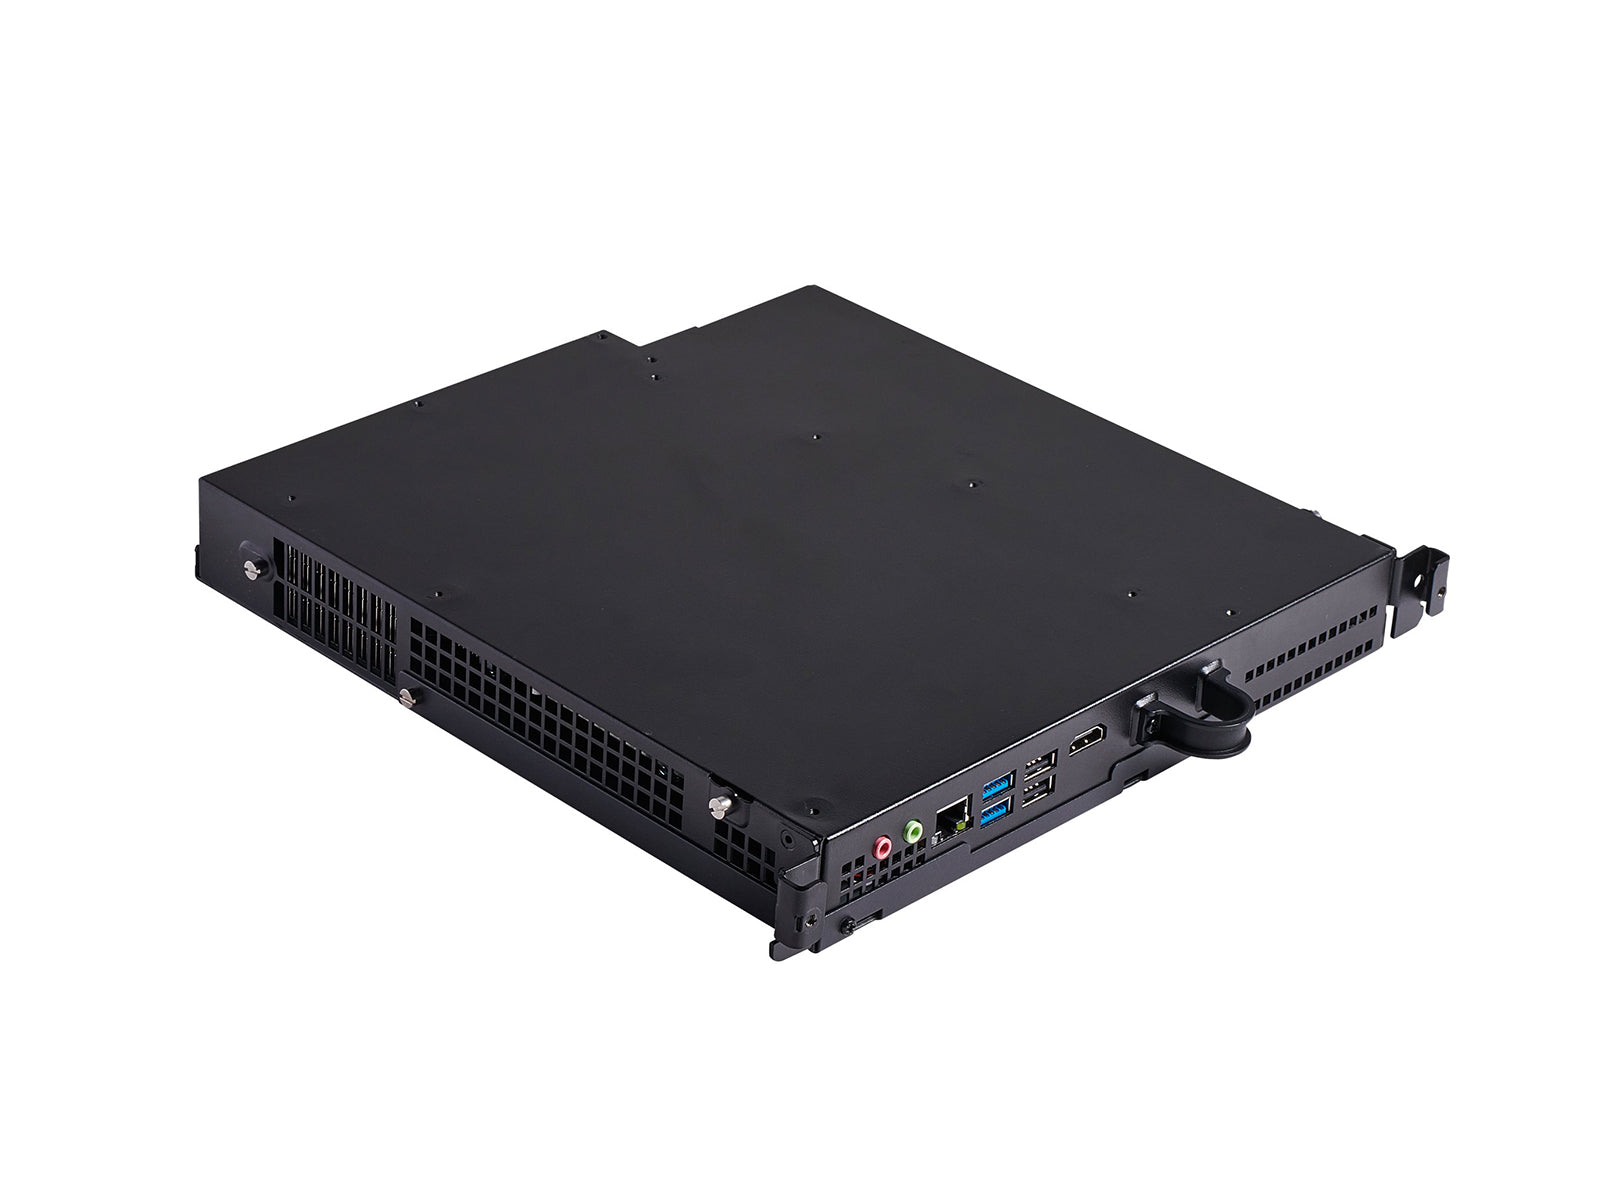 Elo 4202L デジタル サイネージ ディスプレイ 42 インチ 1080P タッチ (E222369)、Elo コンピューター モジュール (E401168 ) 付き